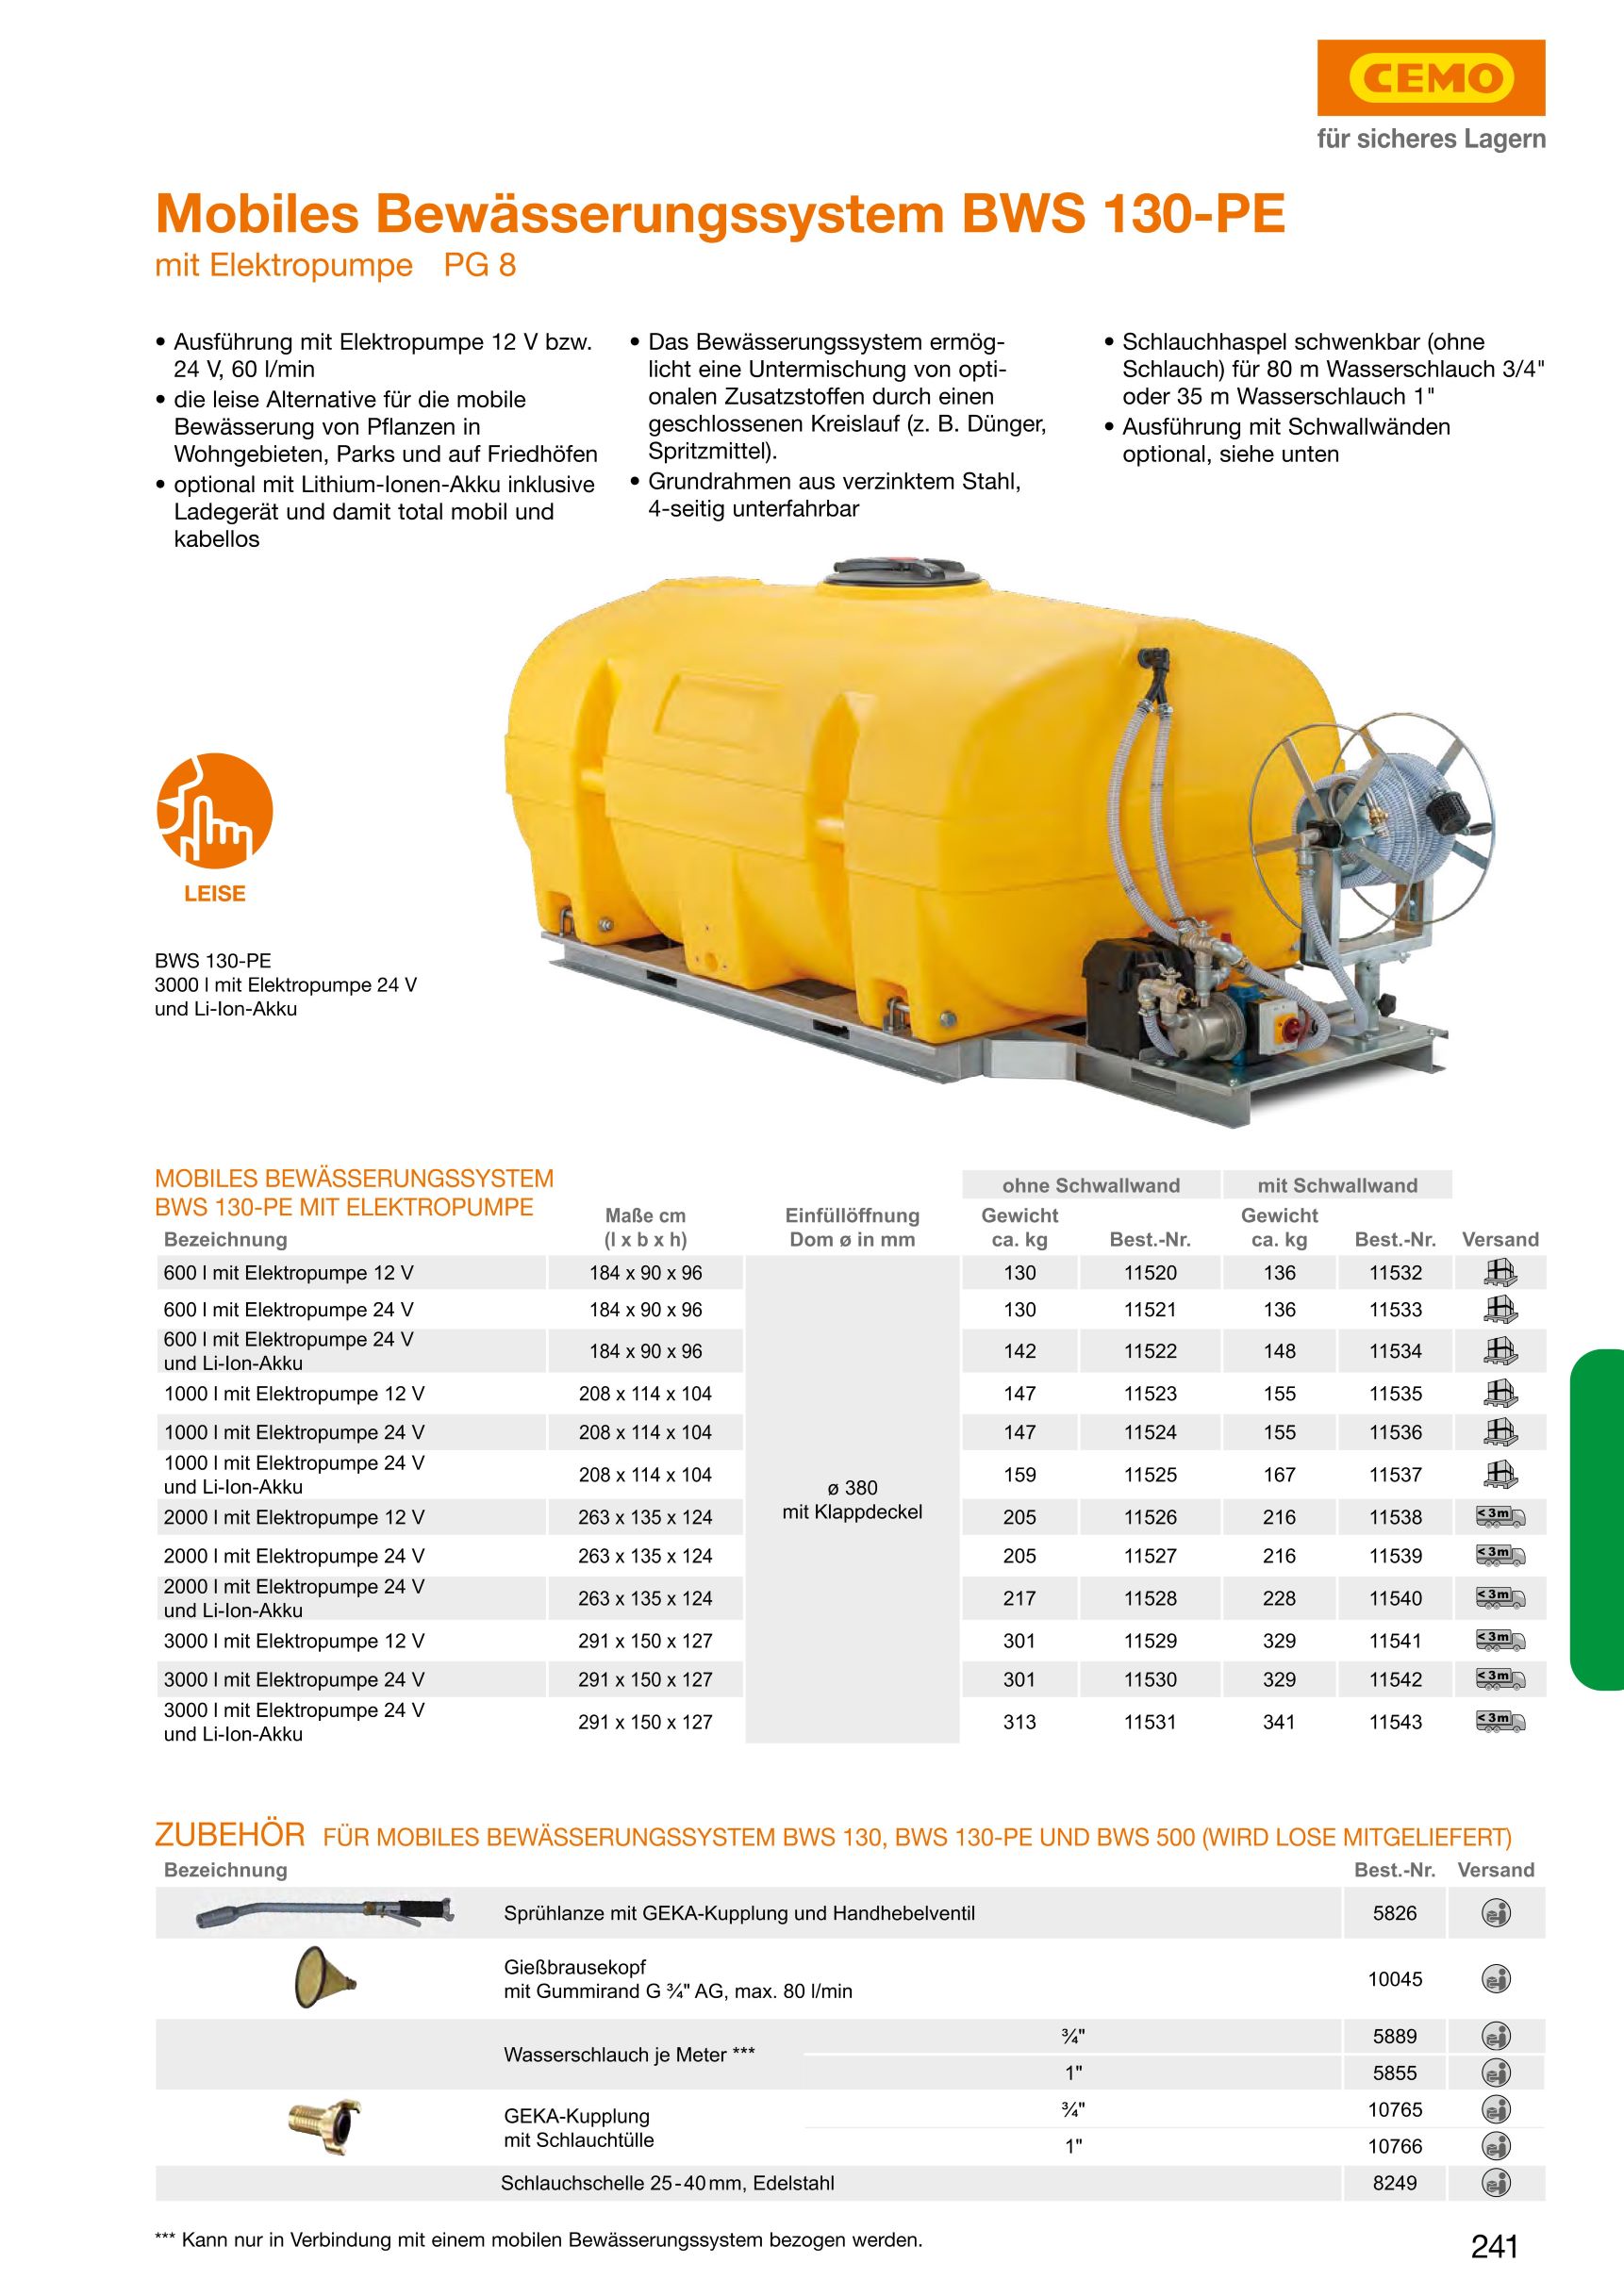 CEMO Mobiles Bewässerungssystem BWS 130-PE, 1000 l, 12 V Pumpe - 11523